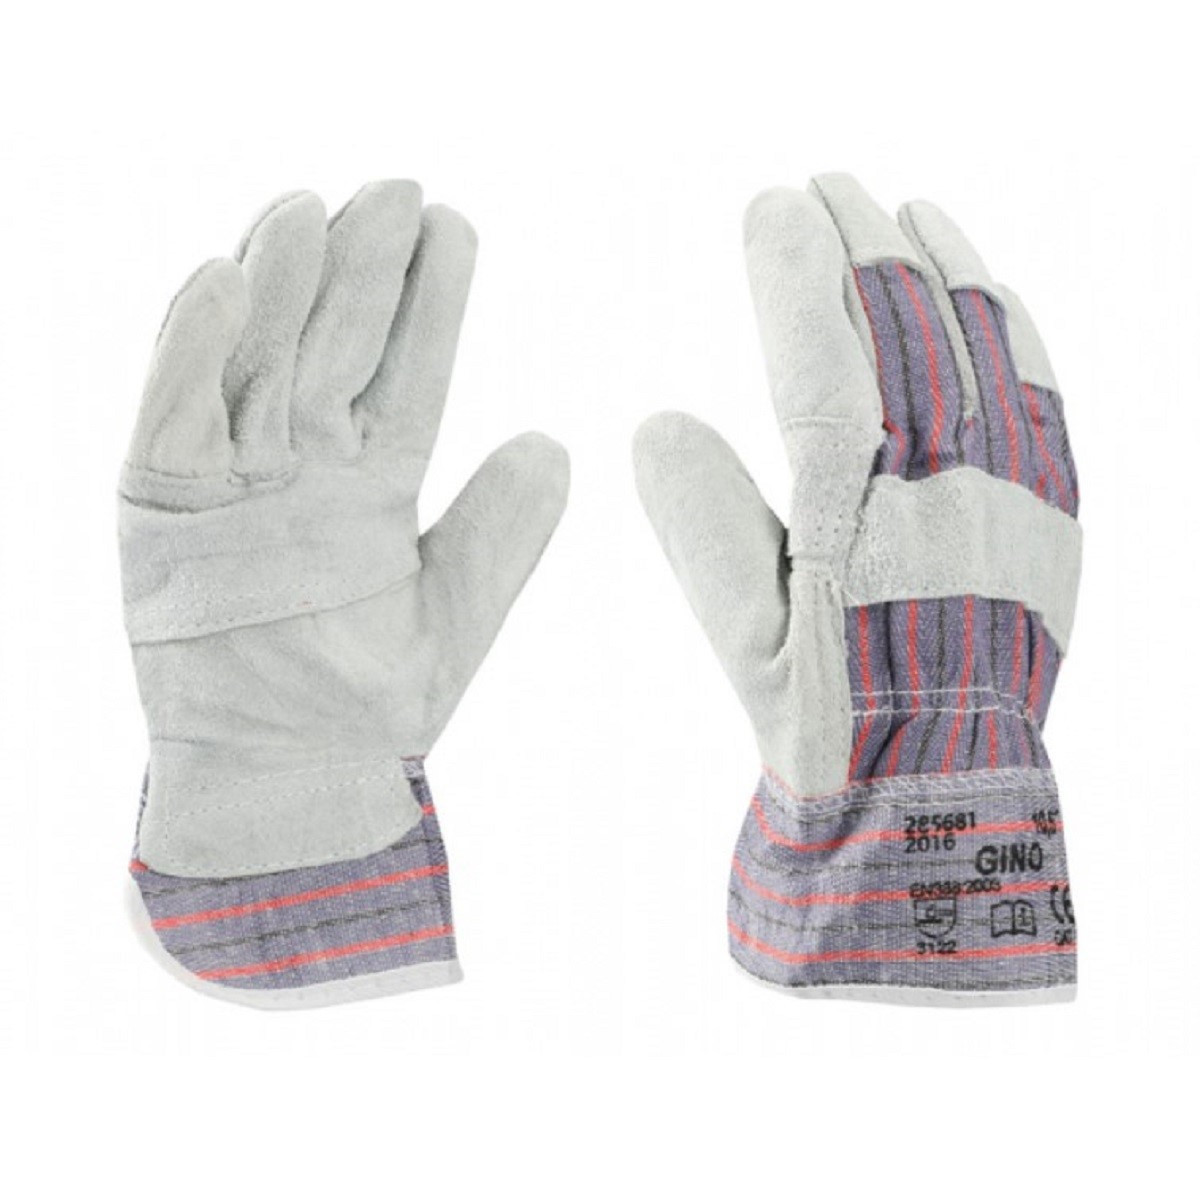 Pracovní rukavice šedé - Gino - prodej zahradních rukavic - 1 pár